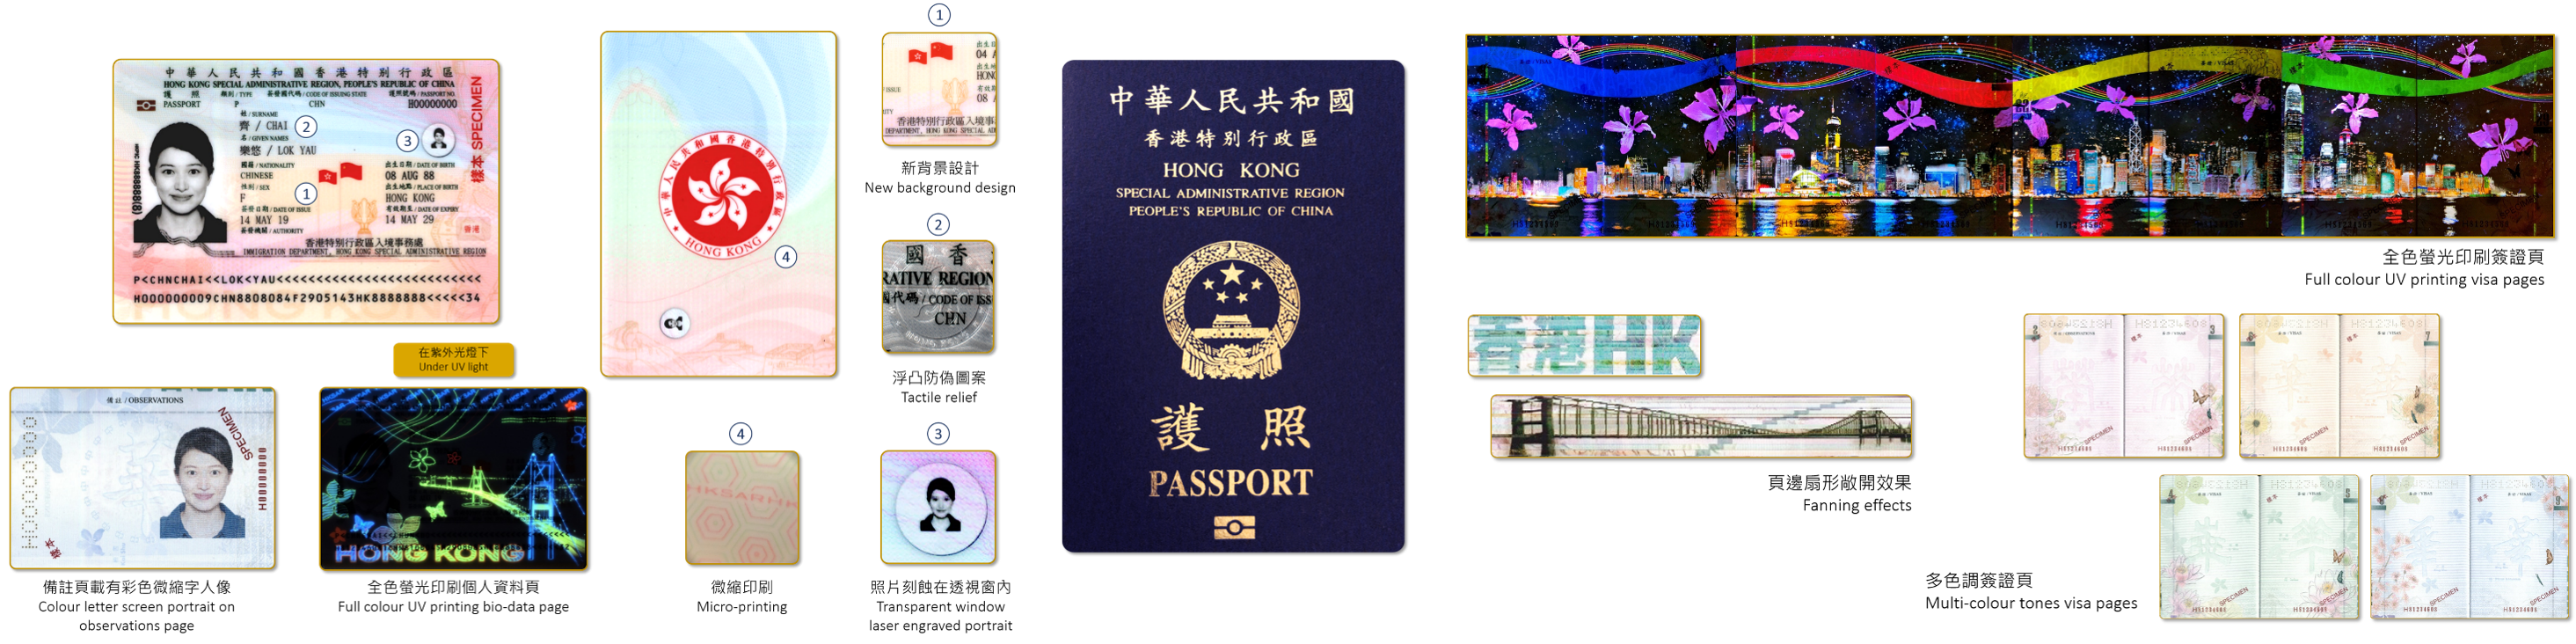 香港特區護照具備最先進的防偽特徵，持證人可免簽證入境或以落地簽證方式到訪全球168個國家和地區，當中超過100個為「一帶一路」沿線國家。